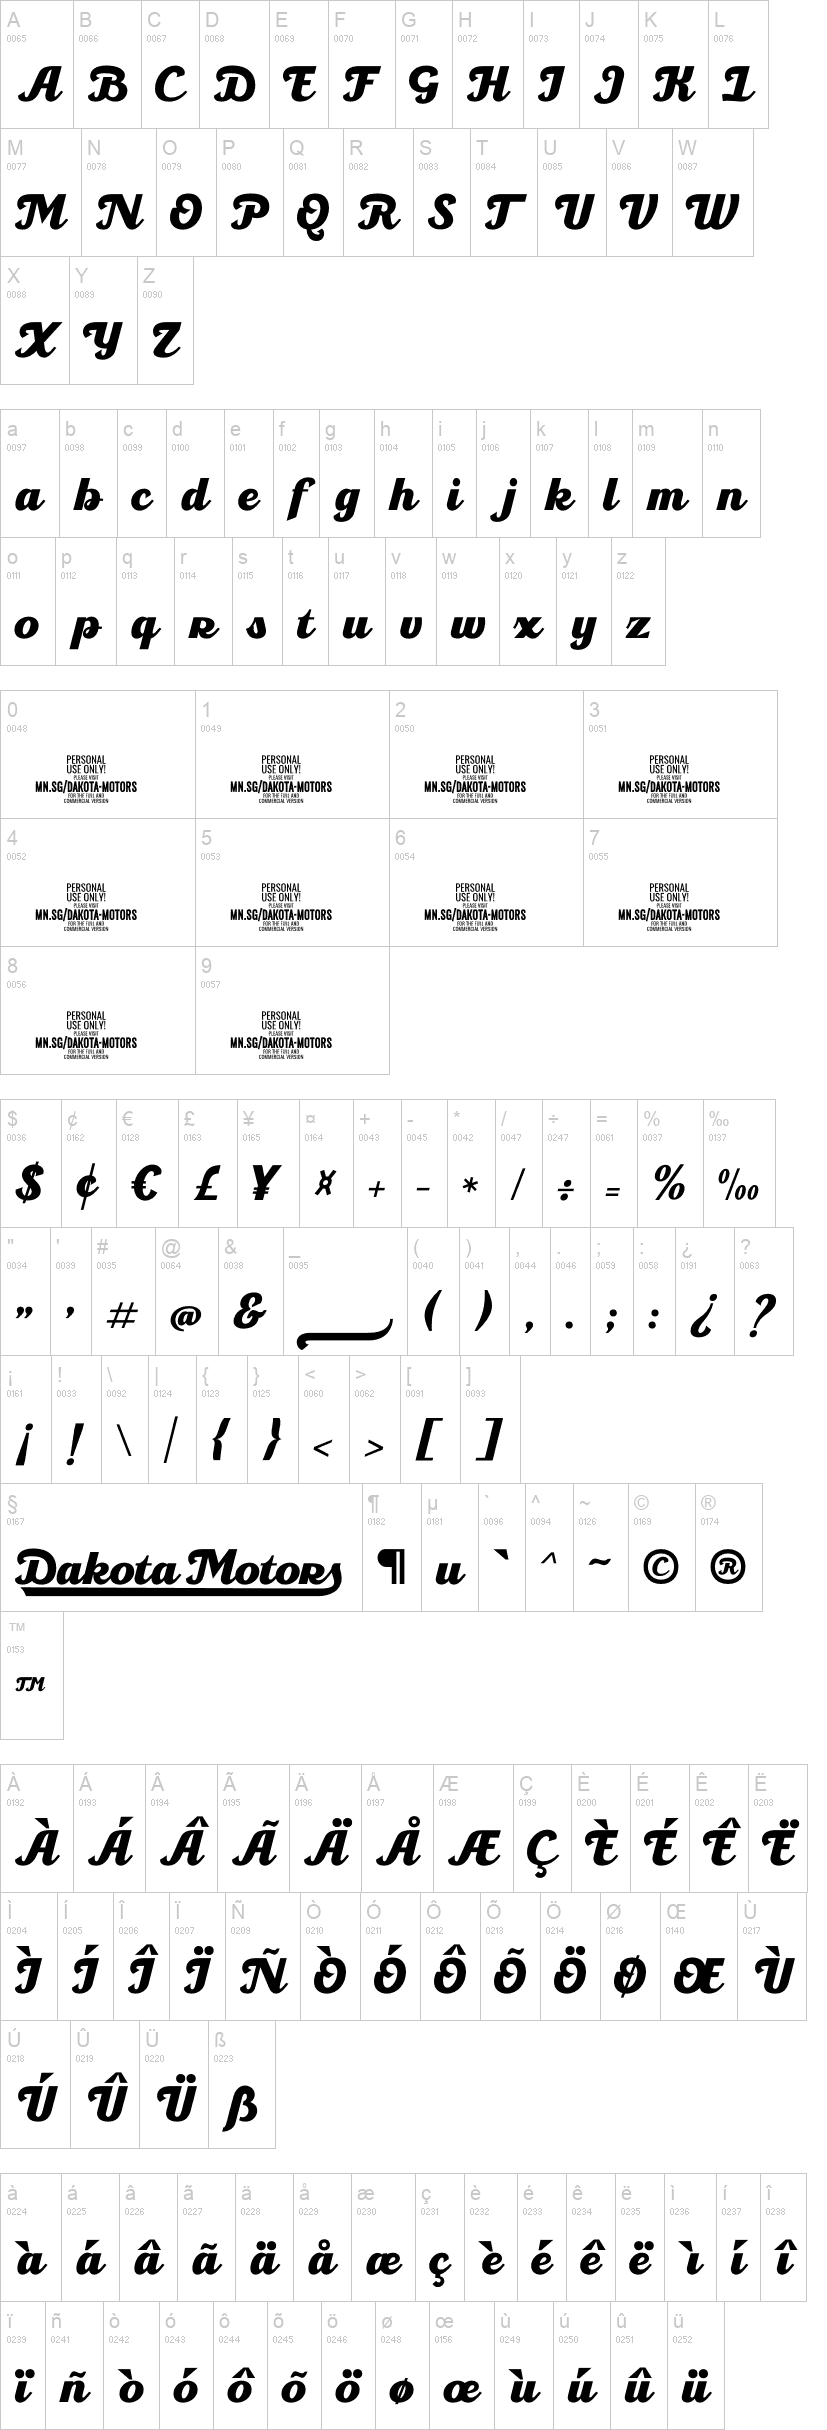 Dakota Motors